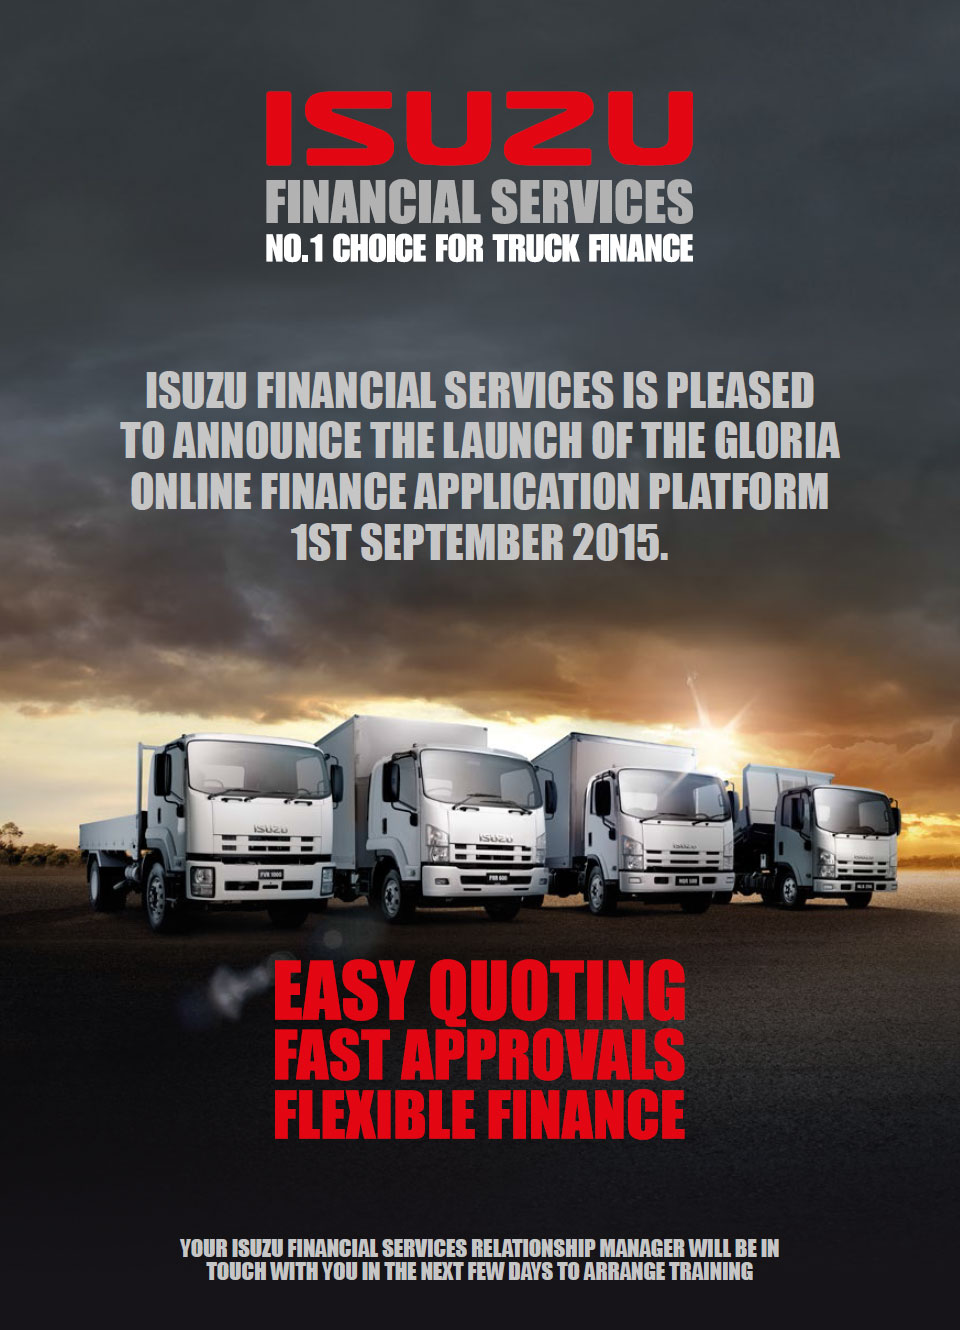 Isuzu-Financial-Services